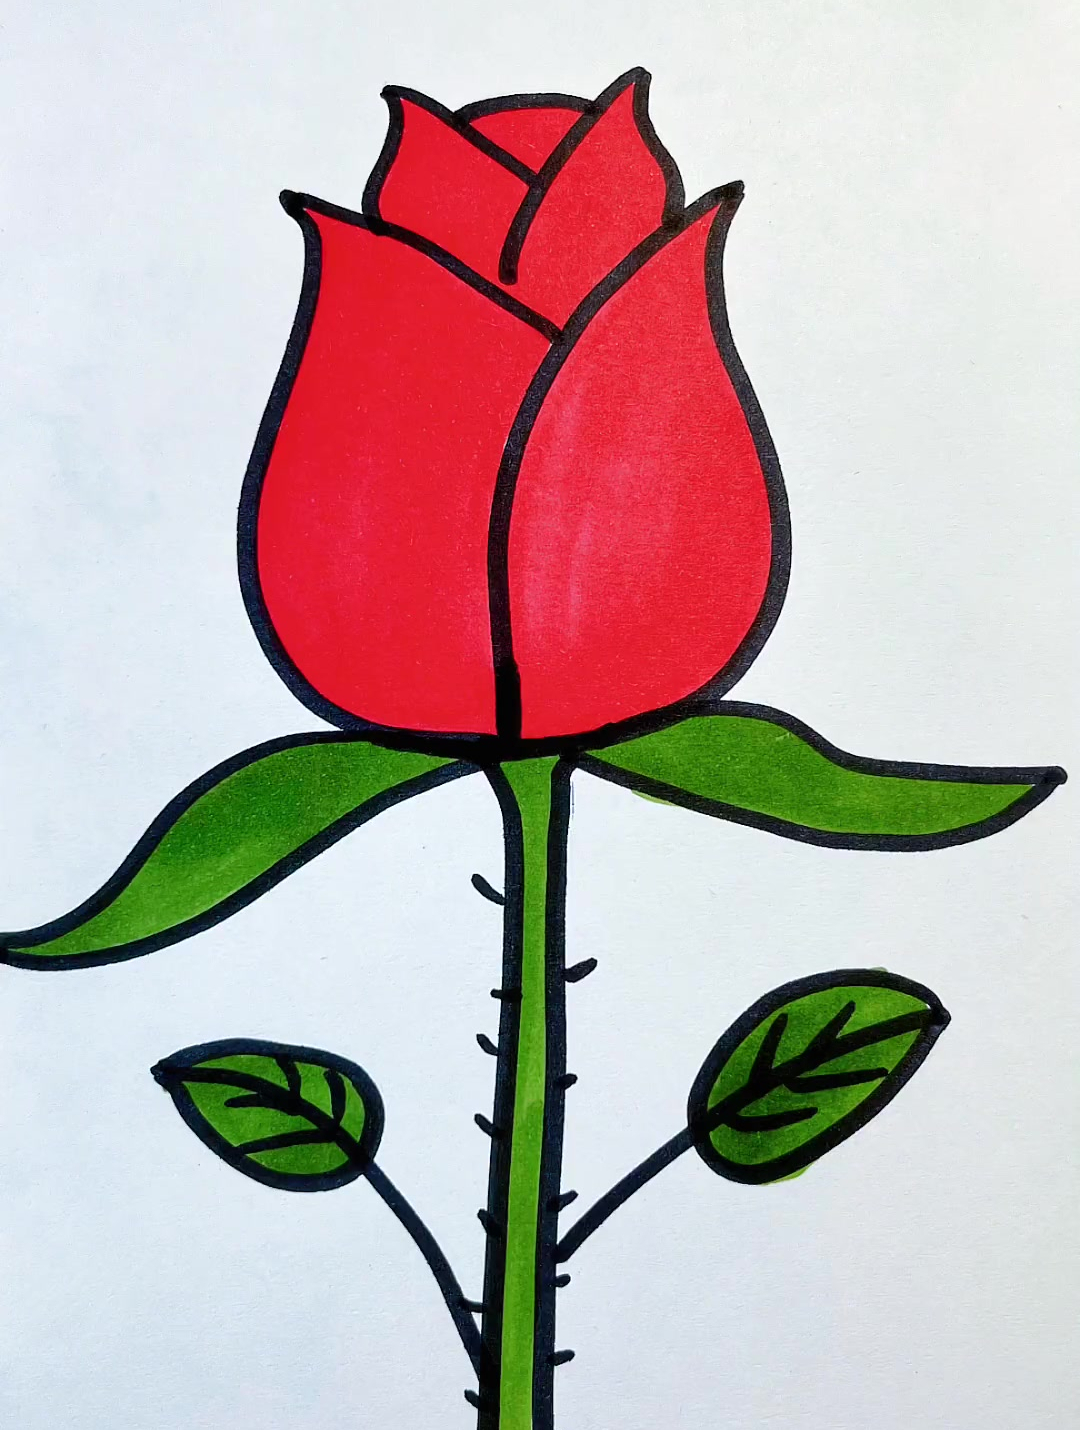 玫瑰花图片简单画法图片